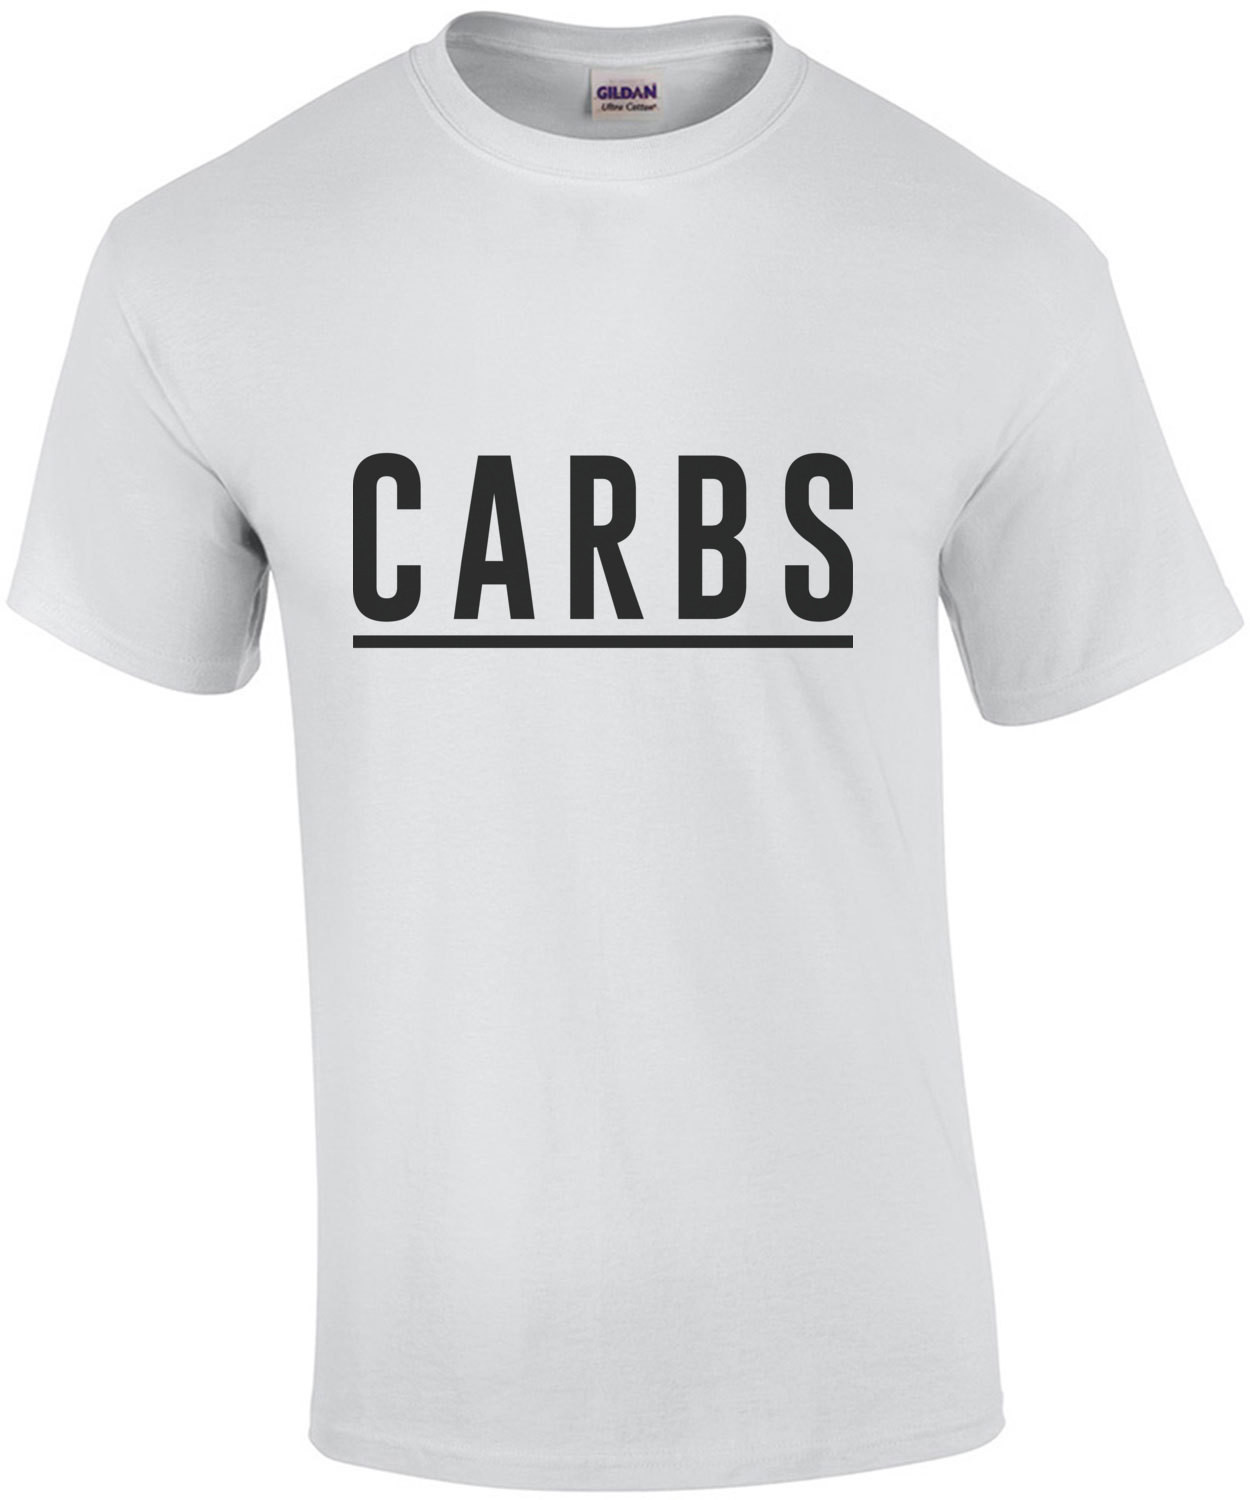 CARBS T-Shirt